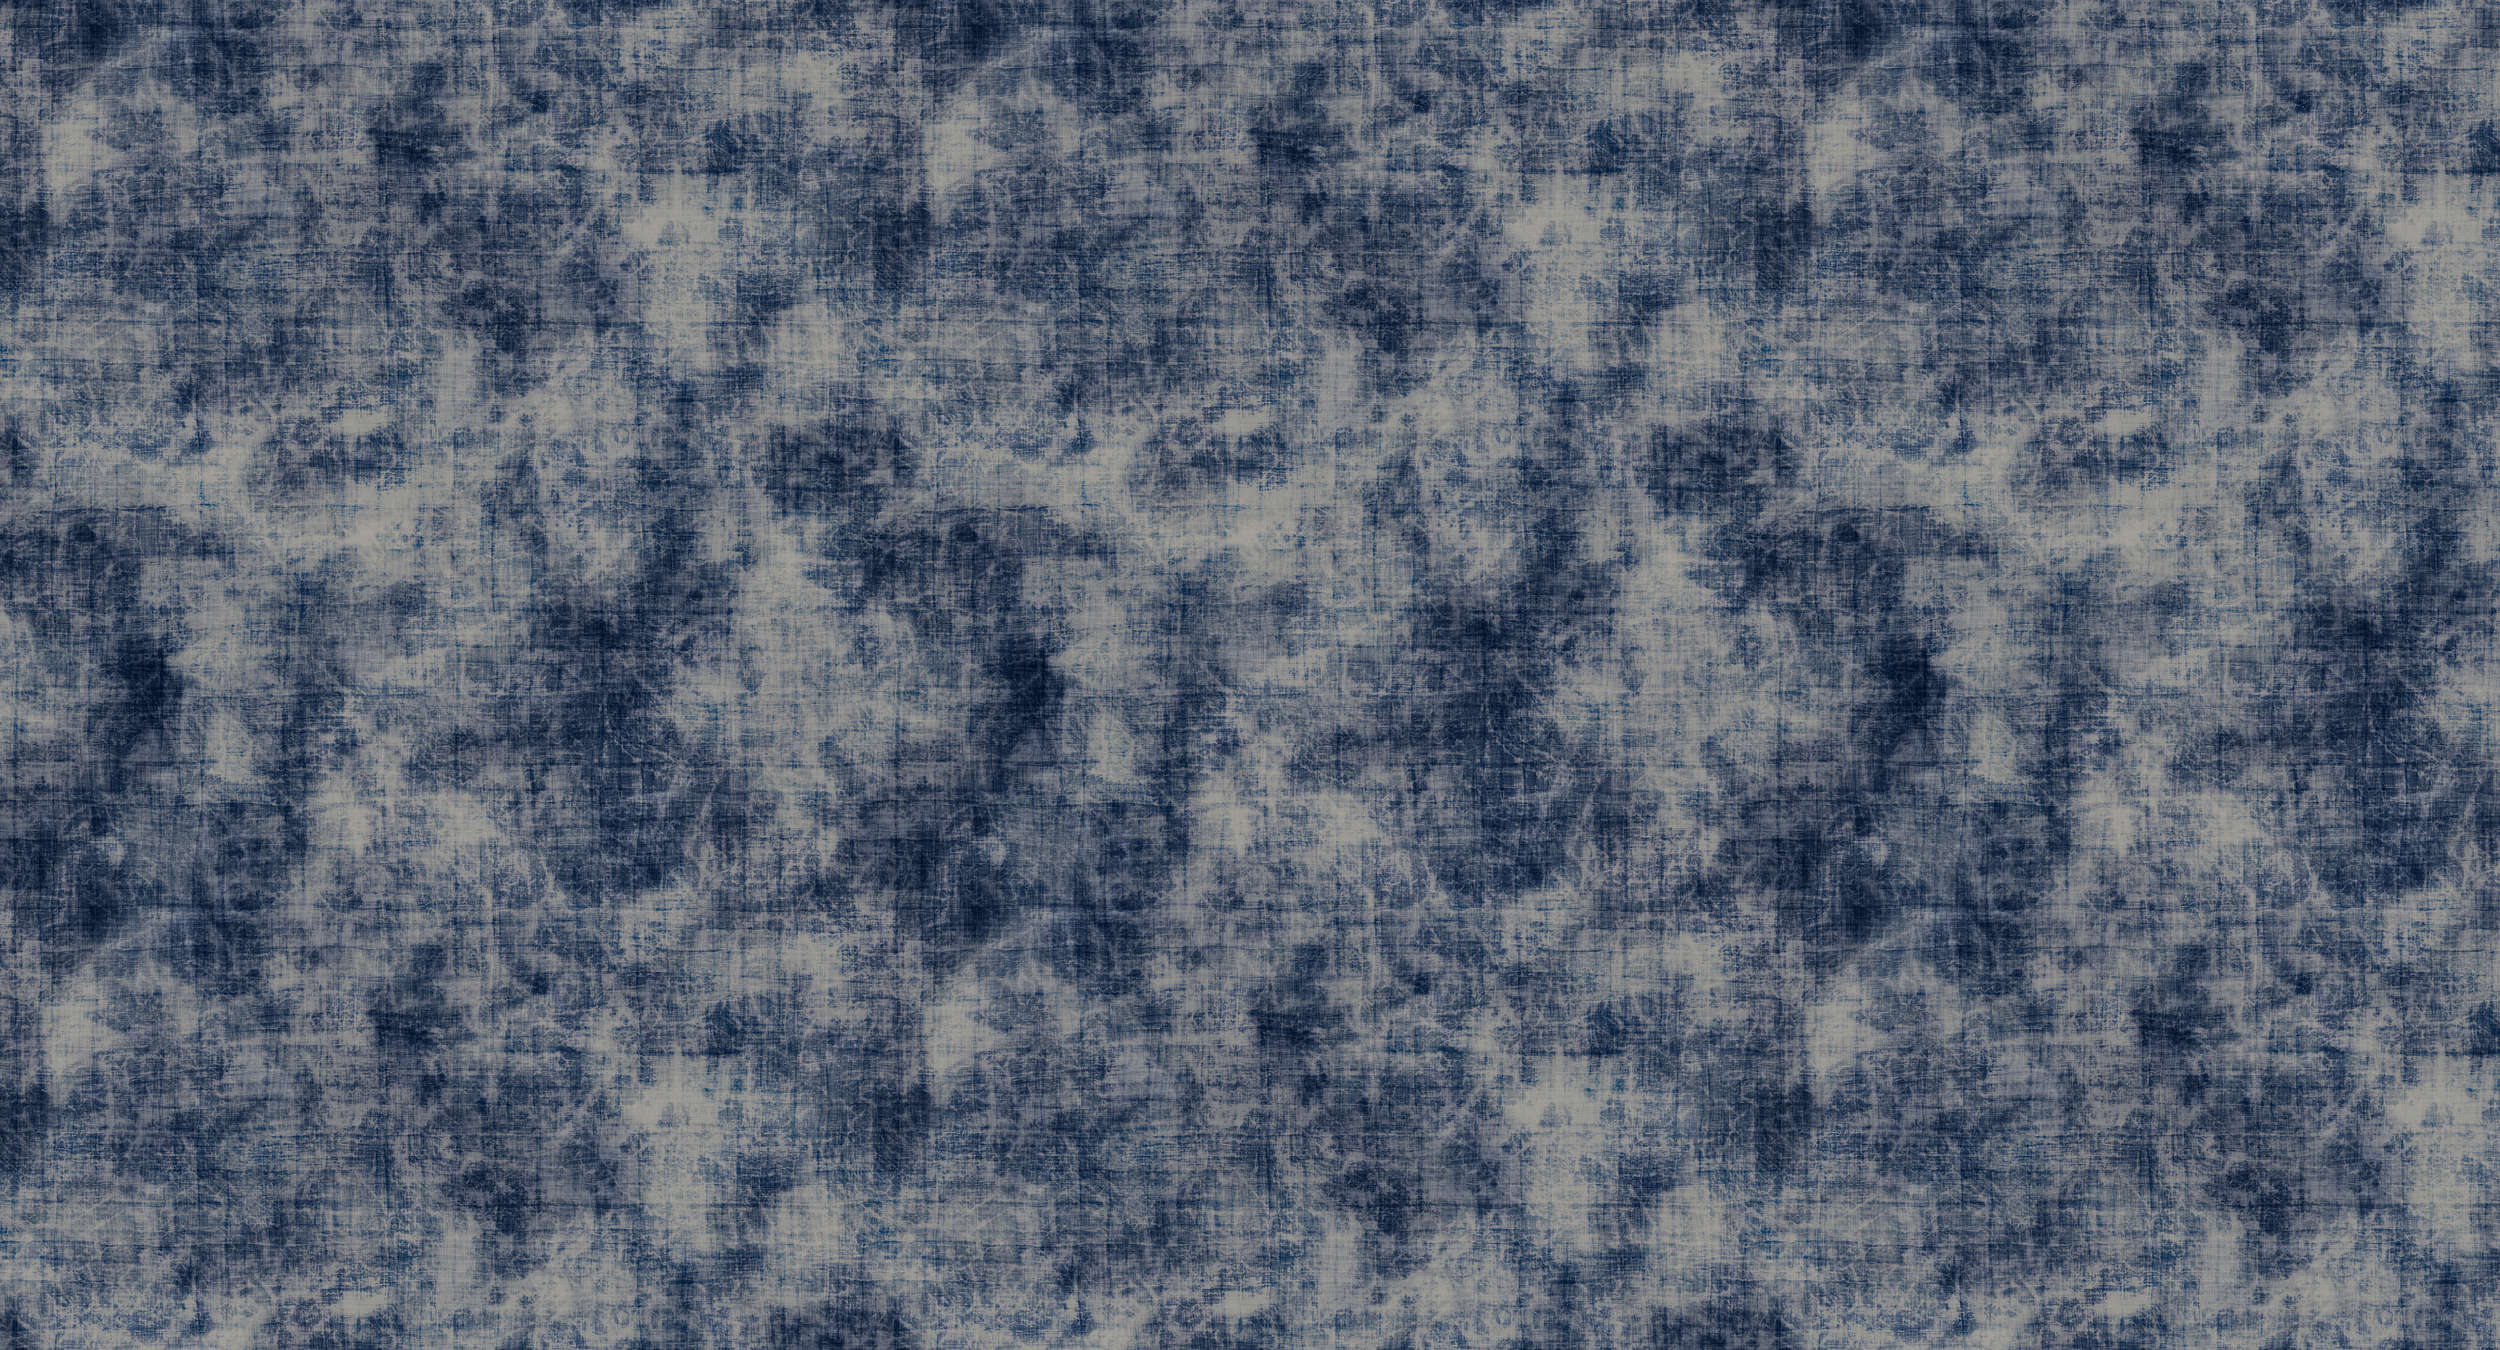             Photo wallpaper batik pattern & textile look - blue, white
        